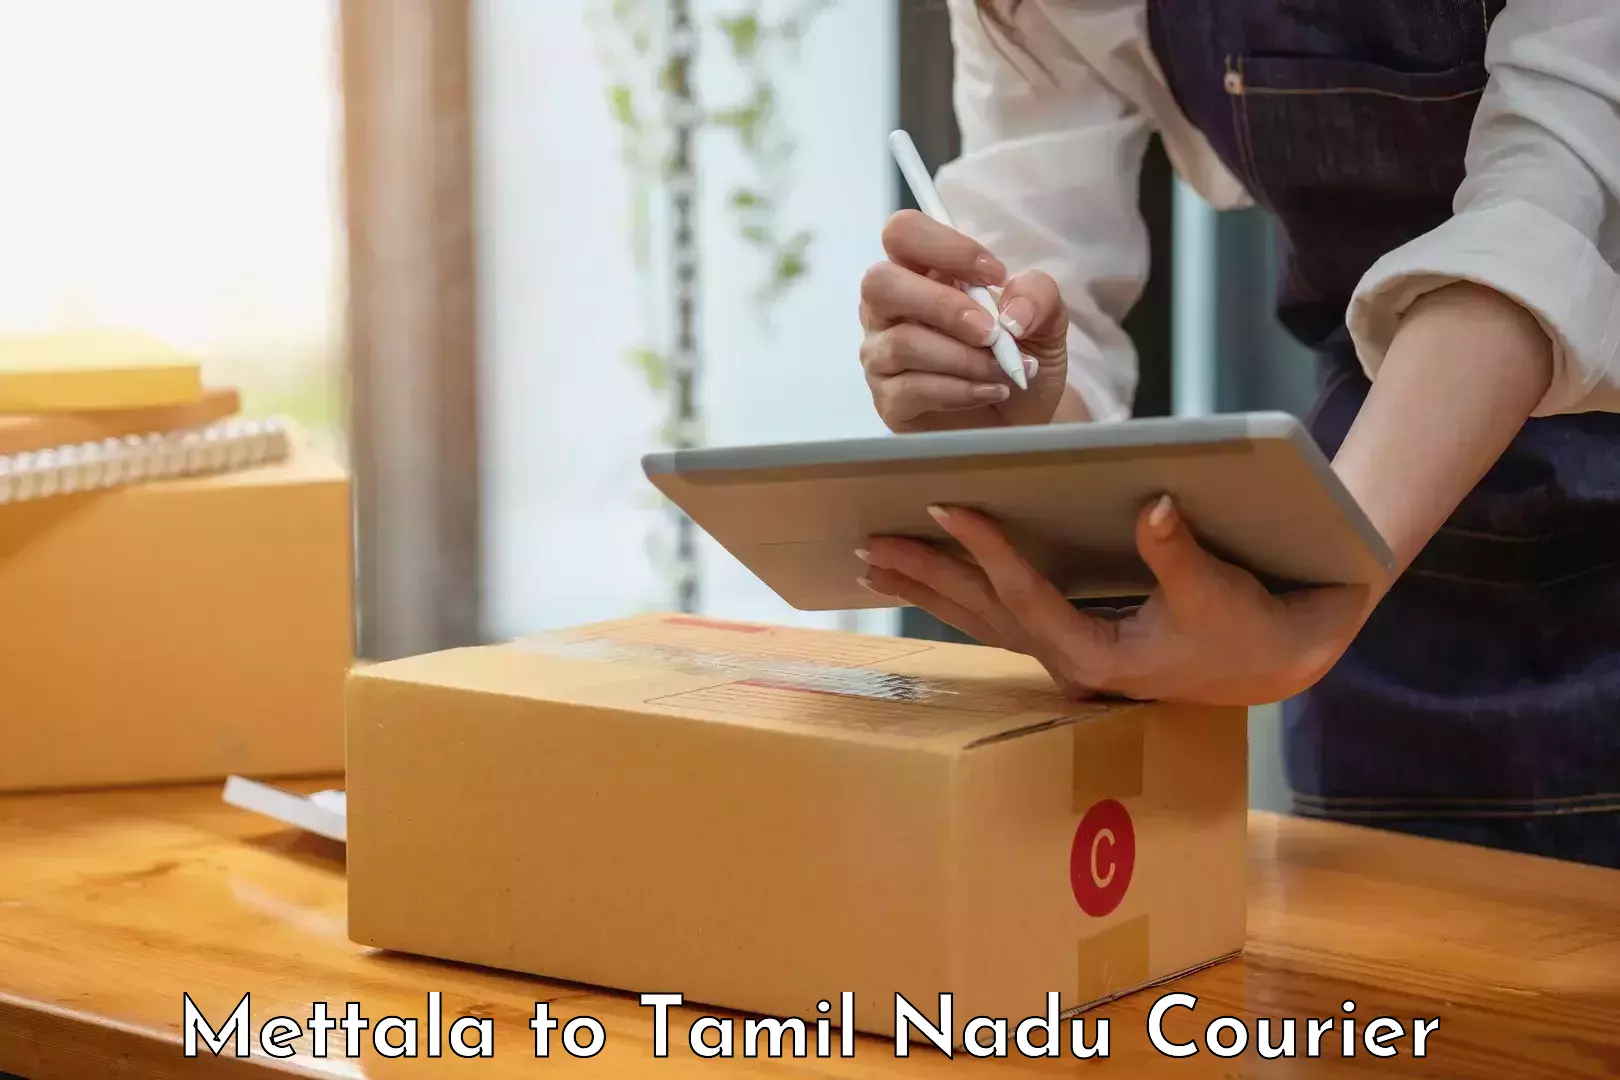 Logistics efficiency Mettala to Tamil Nadu